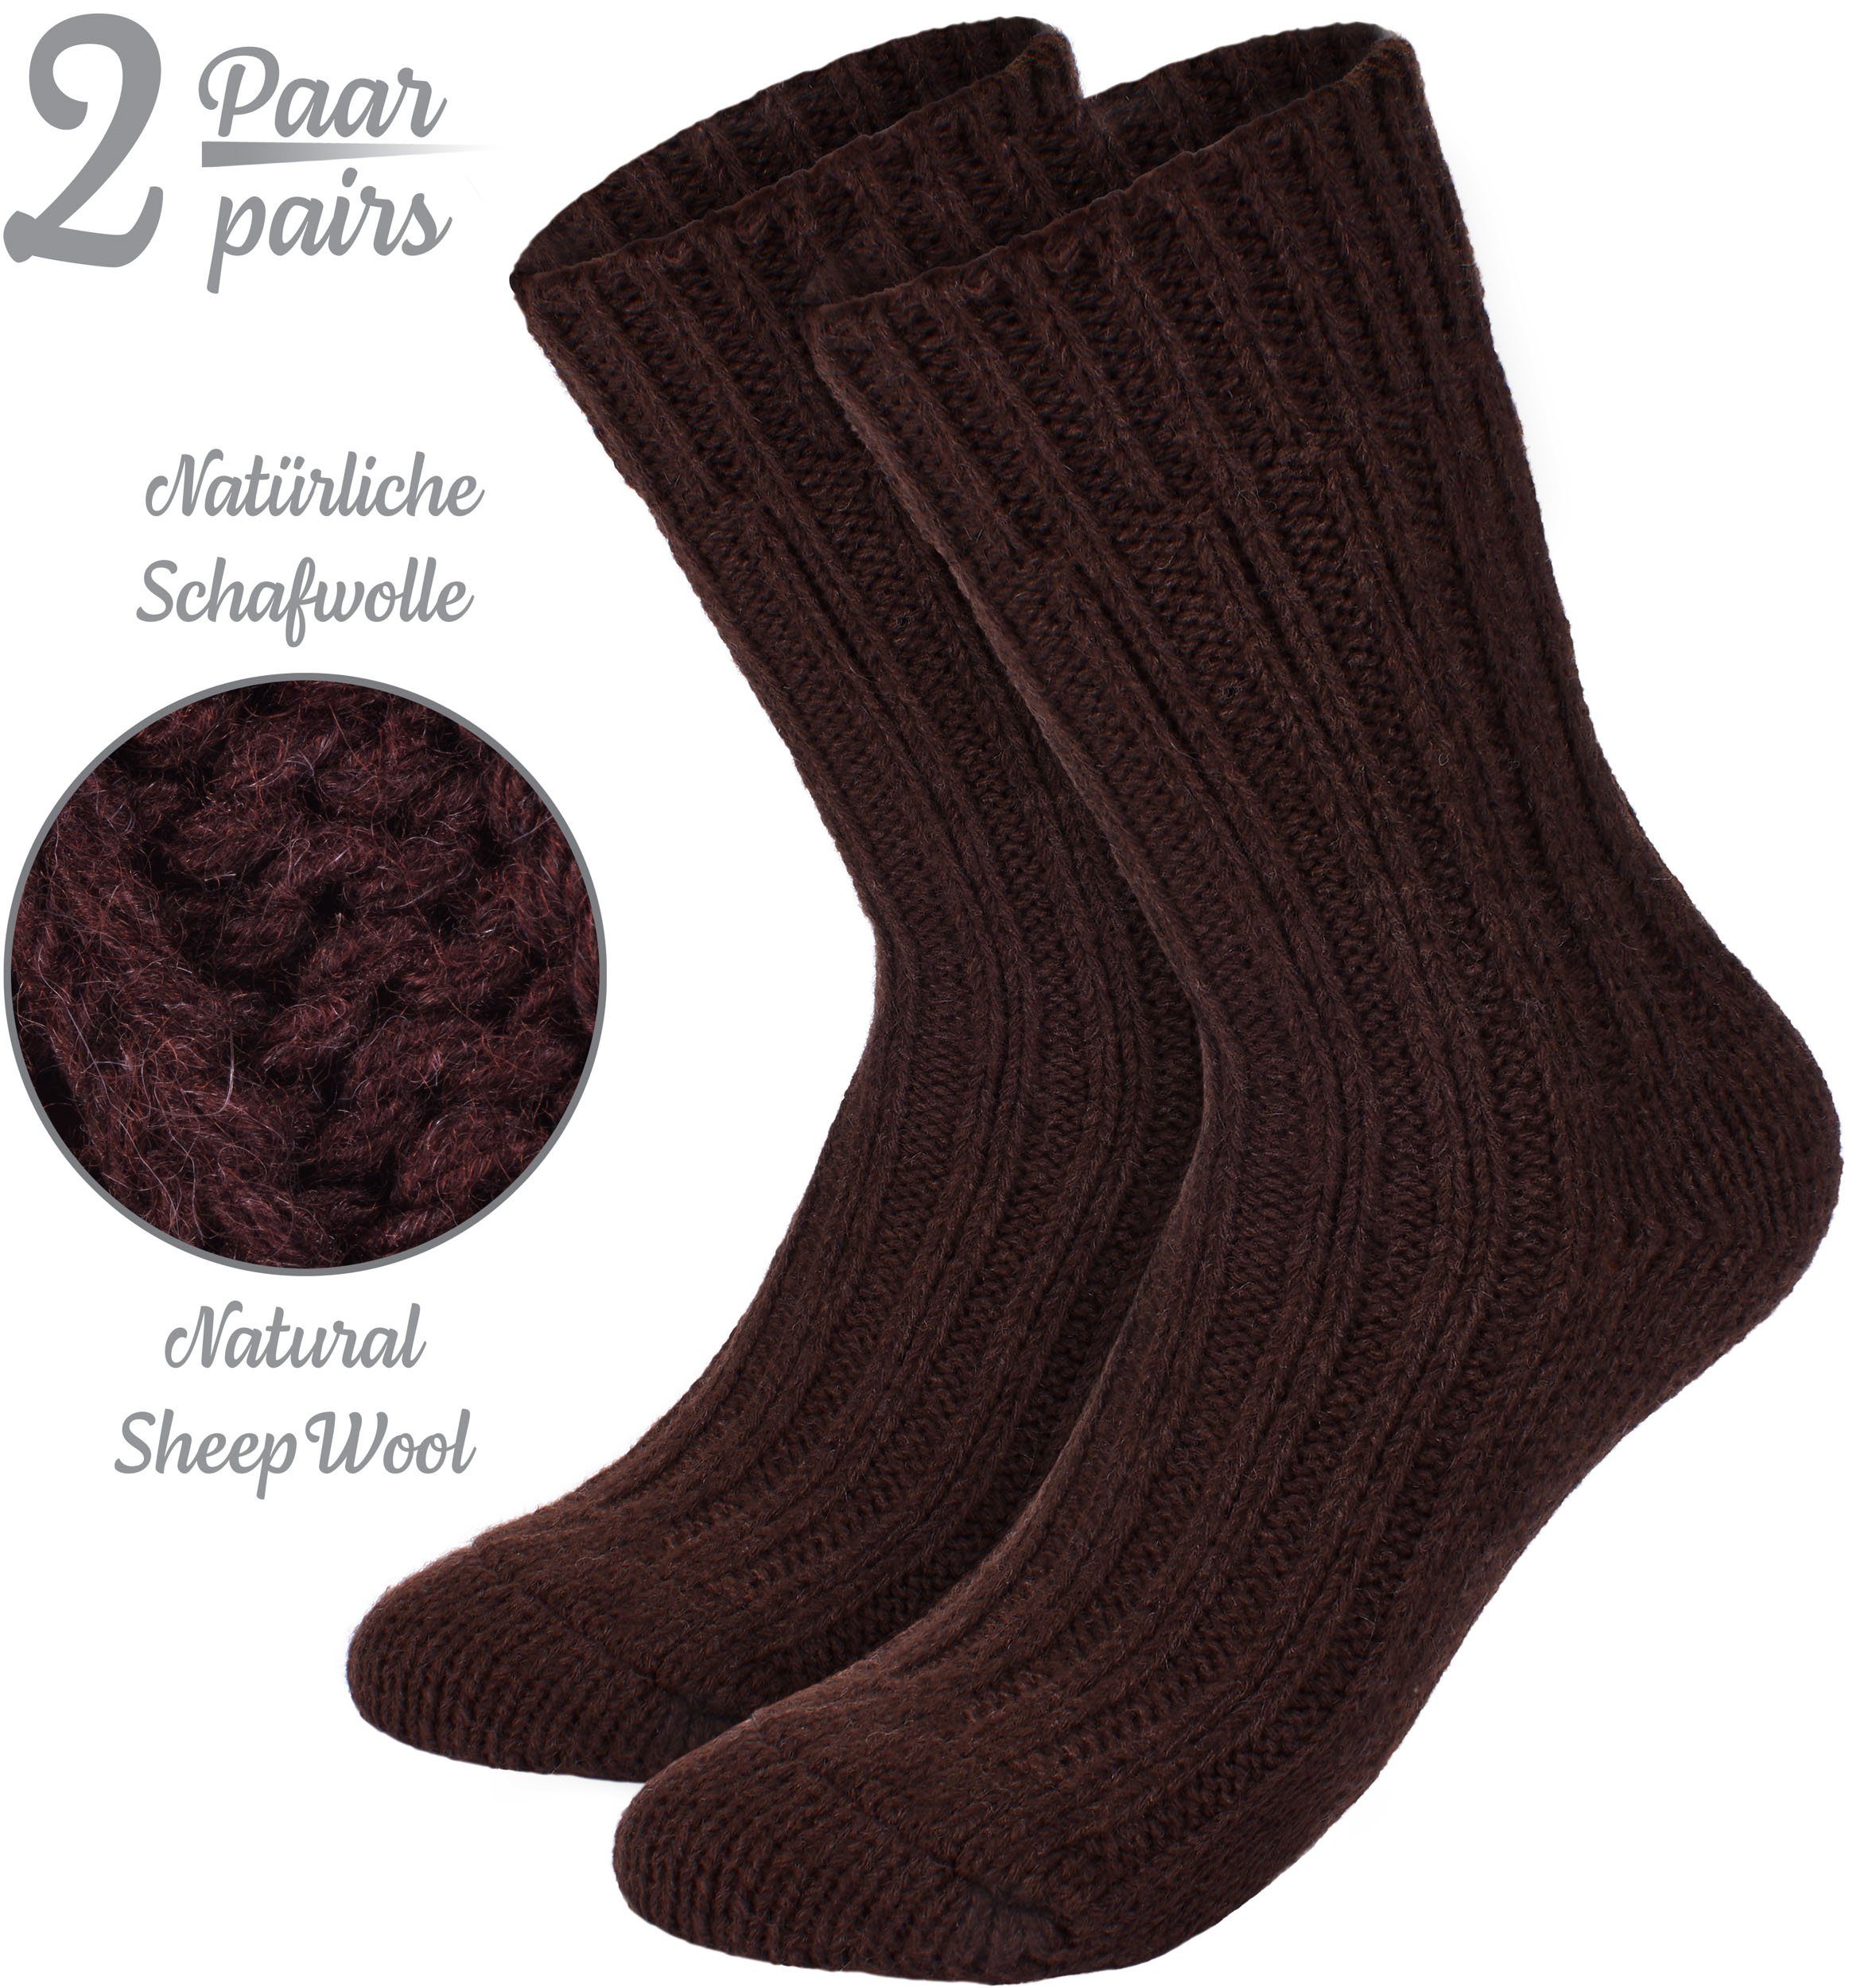 Warm Flauschig Herren Socken Damen Winter Stricksocken (2-Paar) Wintersocken Wollsocken und für mit BRUBAKER - Braun - und Thermosocken - Set Schafwolle